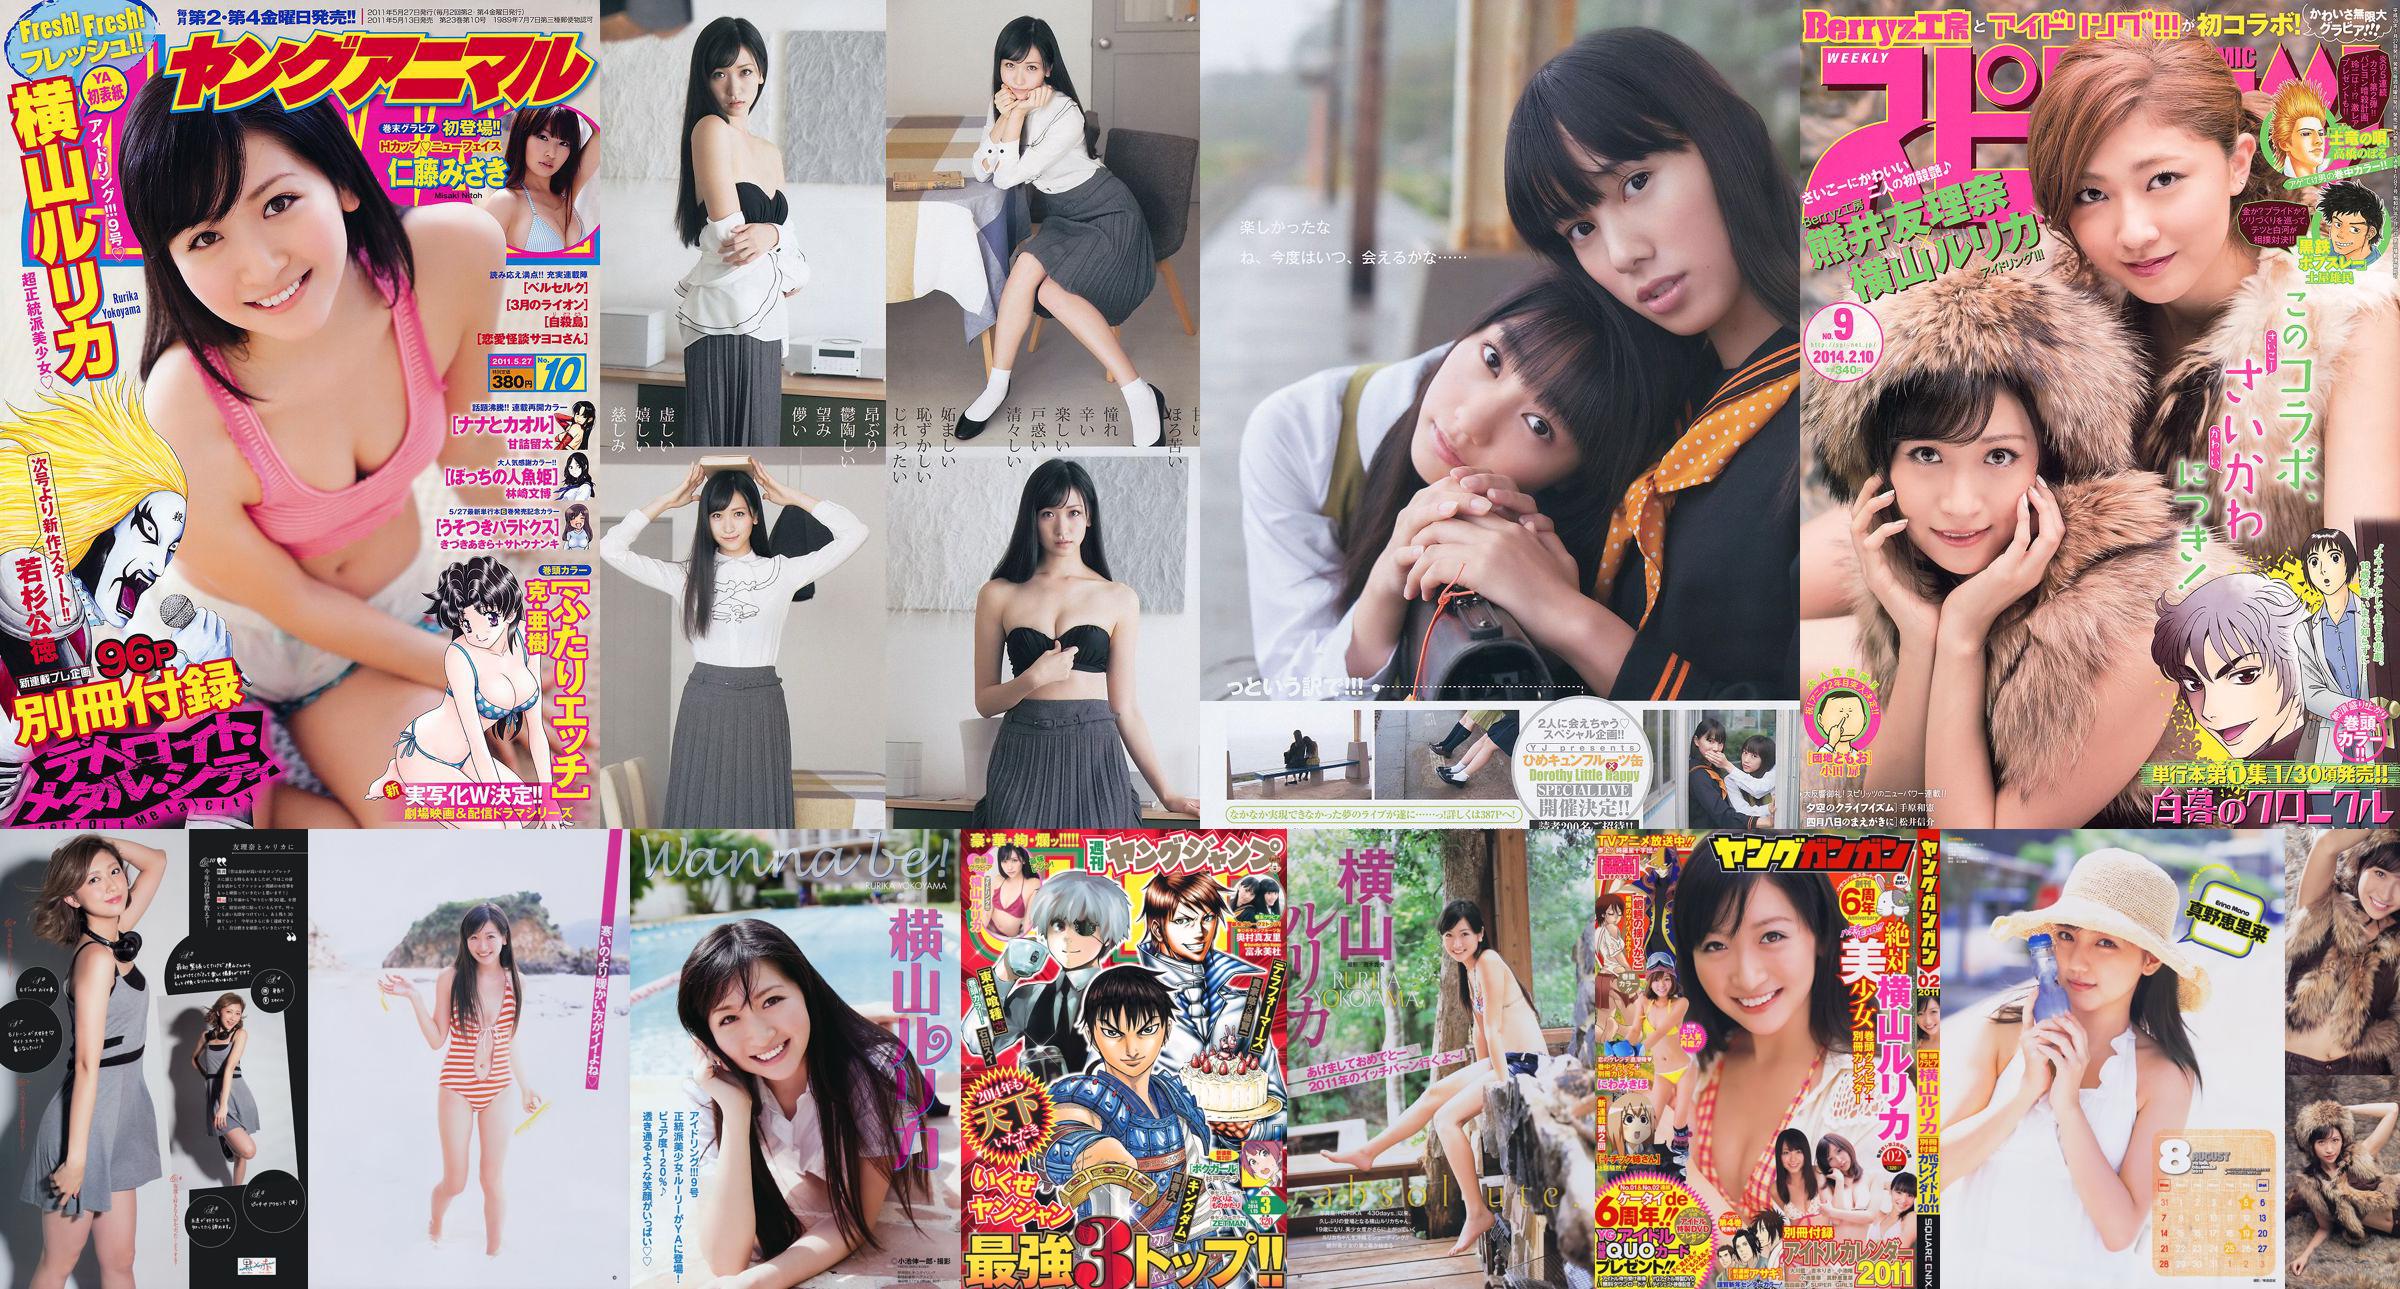 [Weekly Big Comic Spirits] Yokoyama Rurika Kumai Yurina 2014 No.09 Photo Magazine No.77ee01 หน้า 1